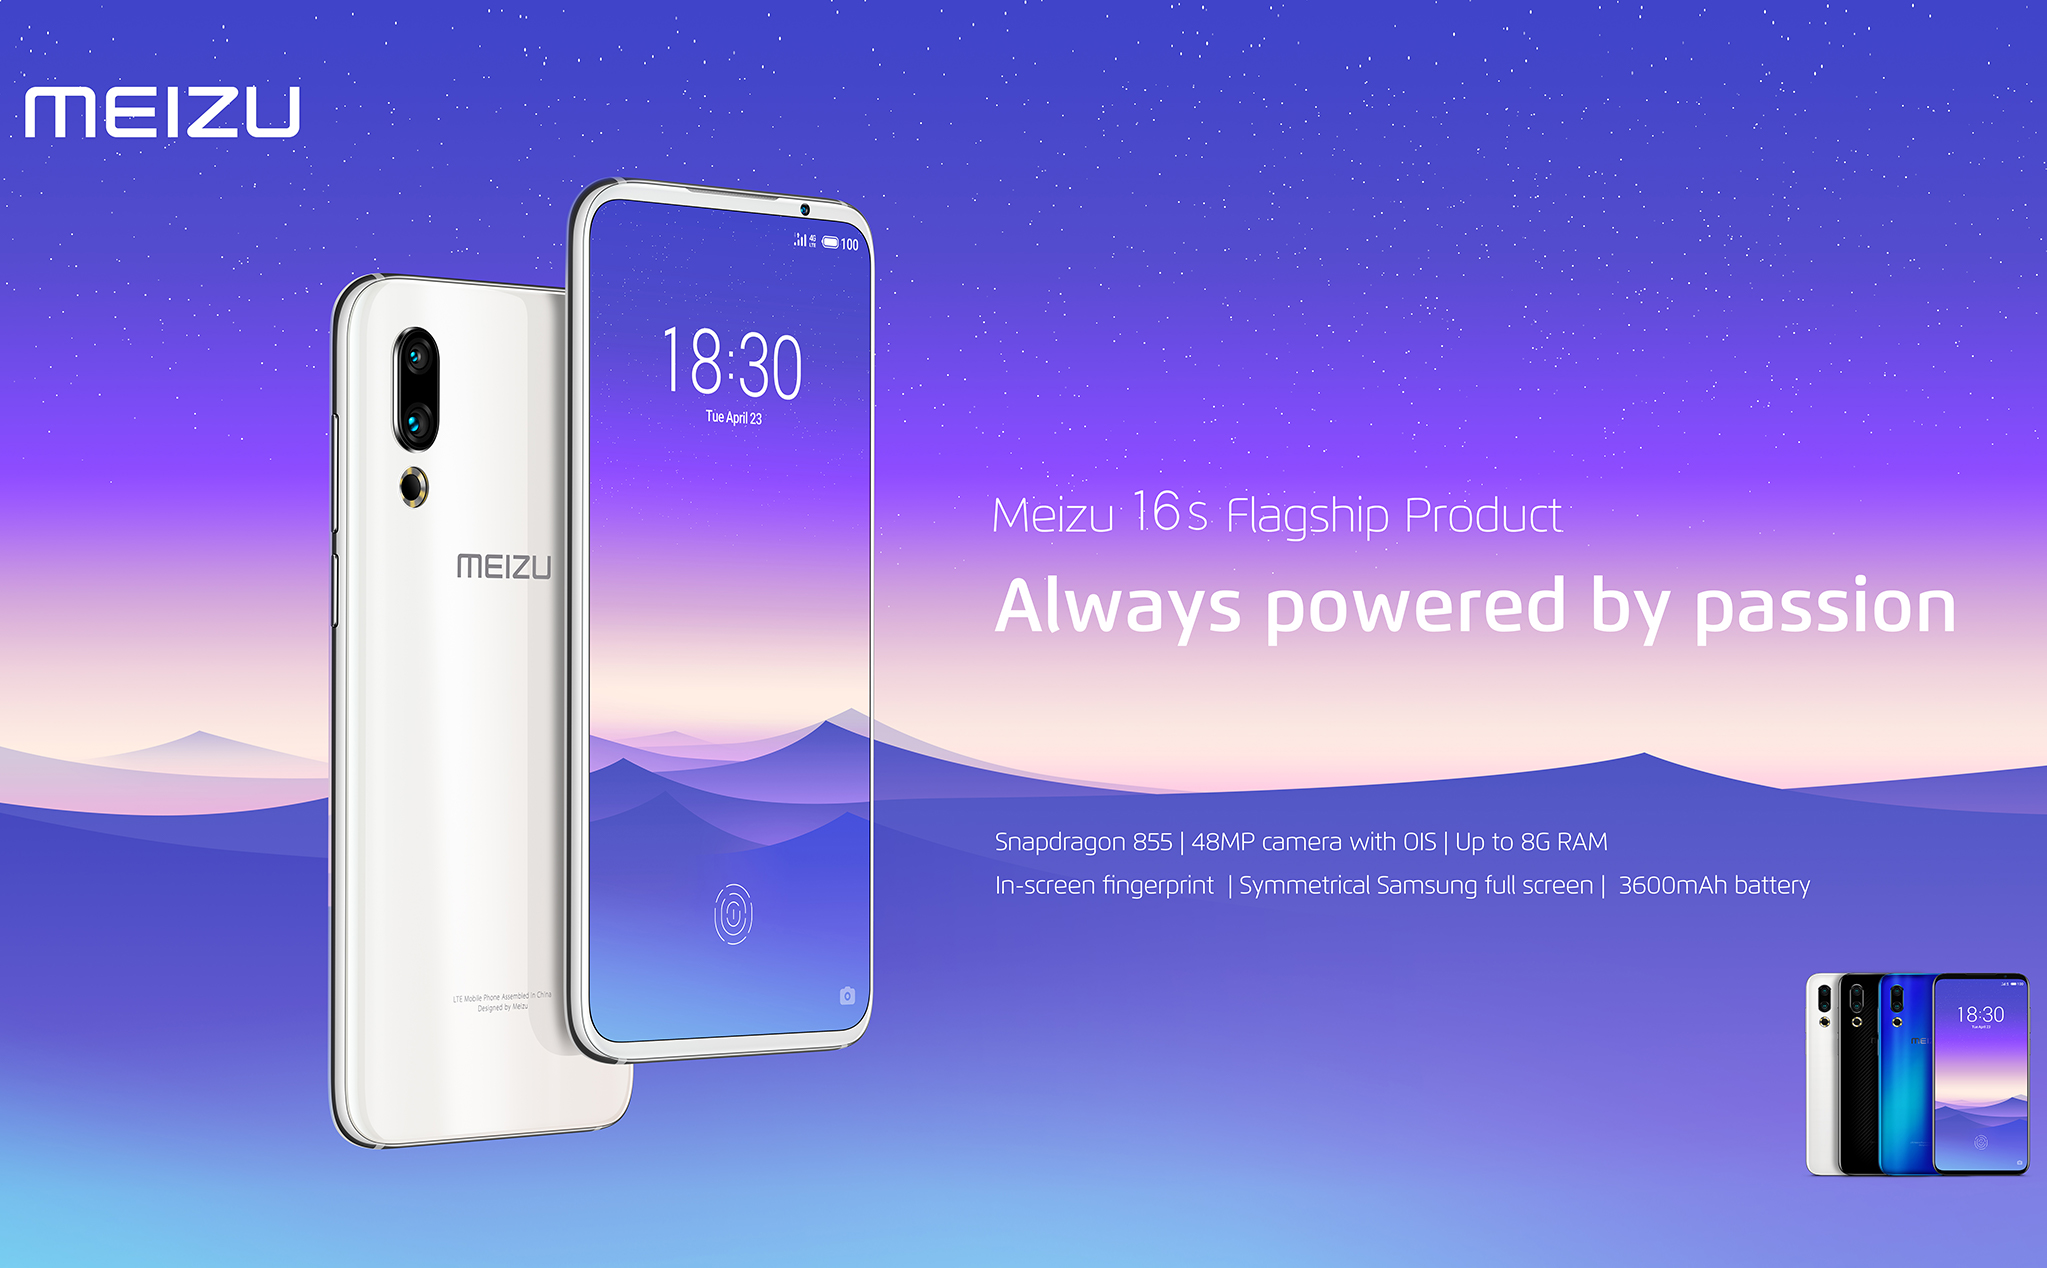 Meizu 16s chính thức: giá từ 475$, Snapdragon 855, viền màn hình mỏng với camera selfie siêu nhỏ